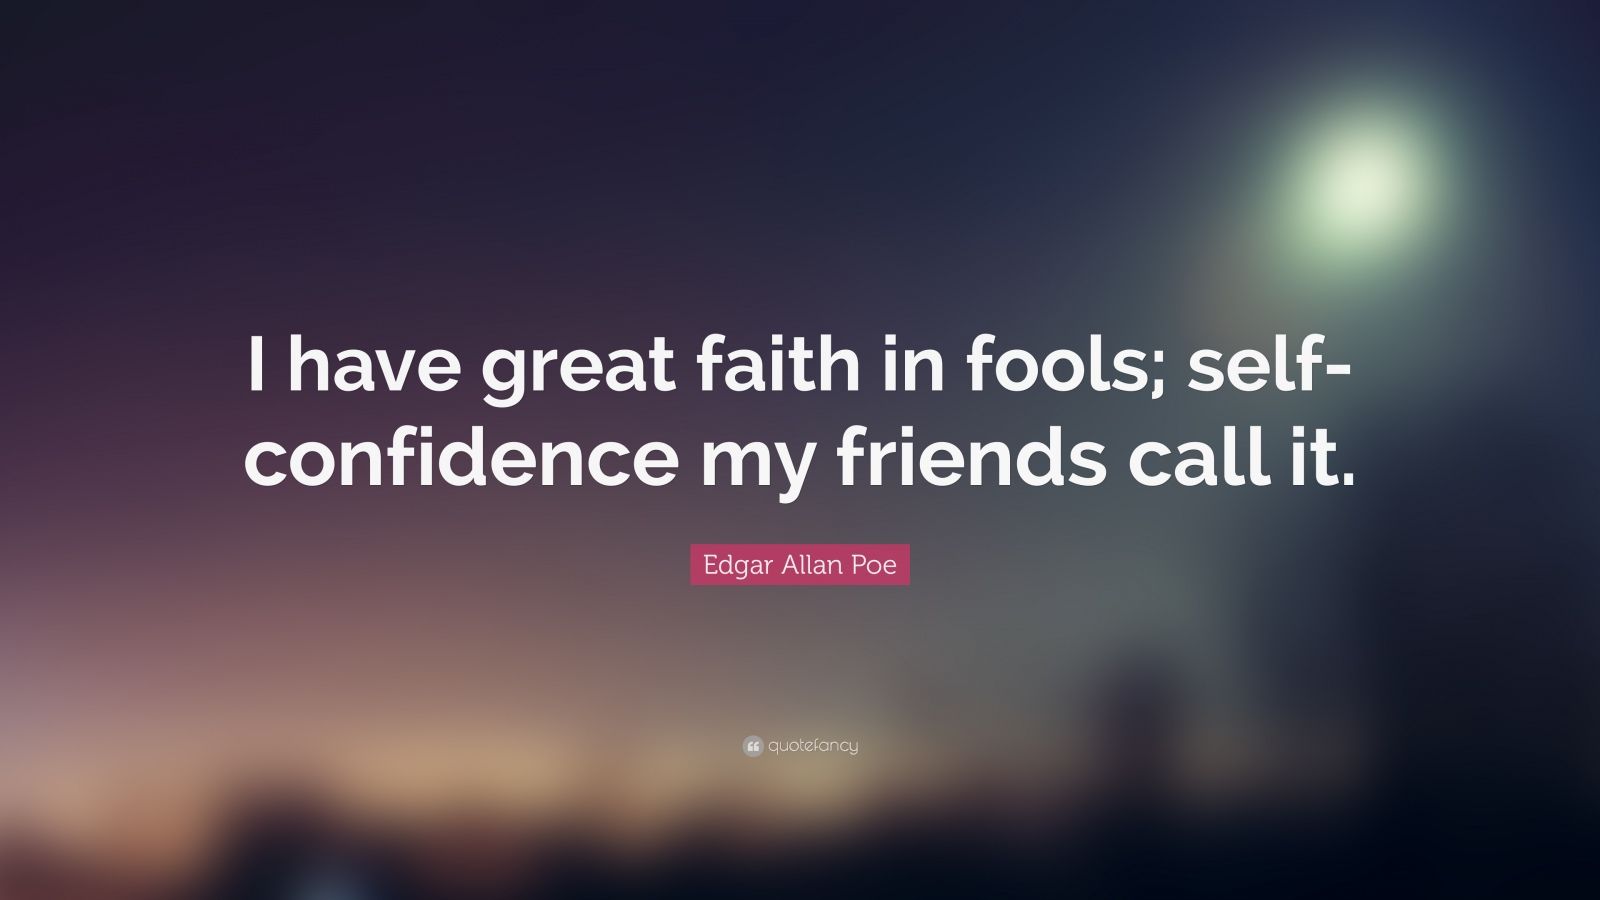 Edgar Allan Poe Quotes (45 wallpapers) - Quotefancy